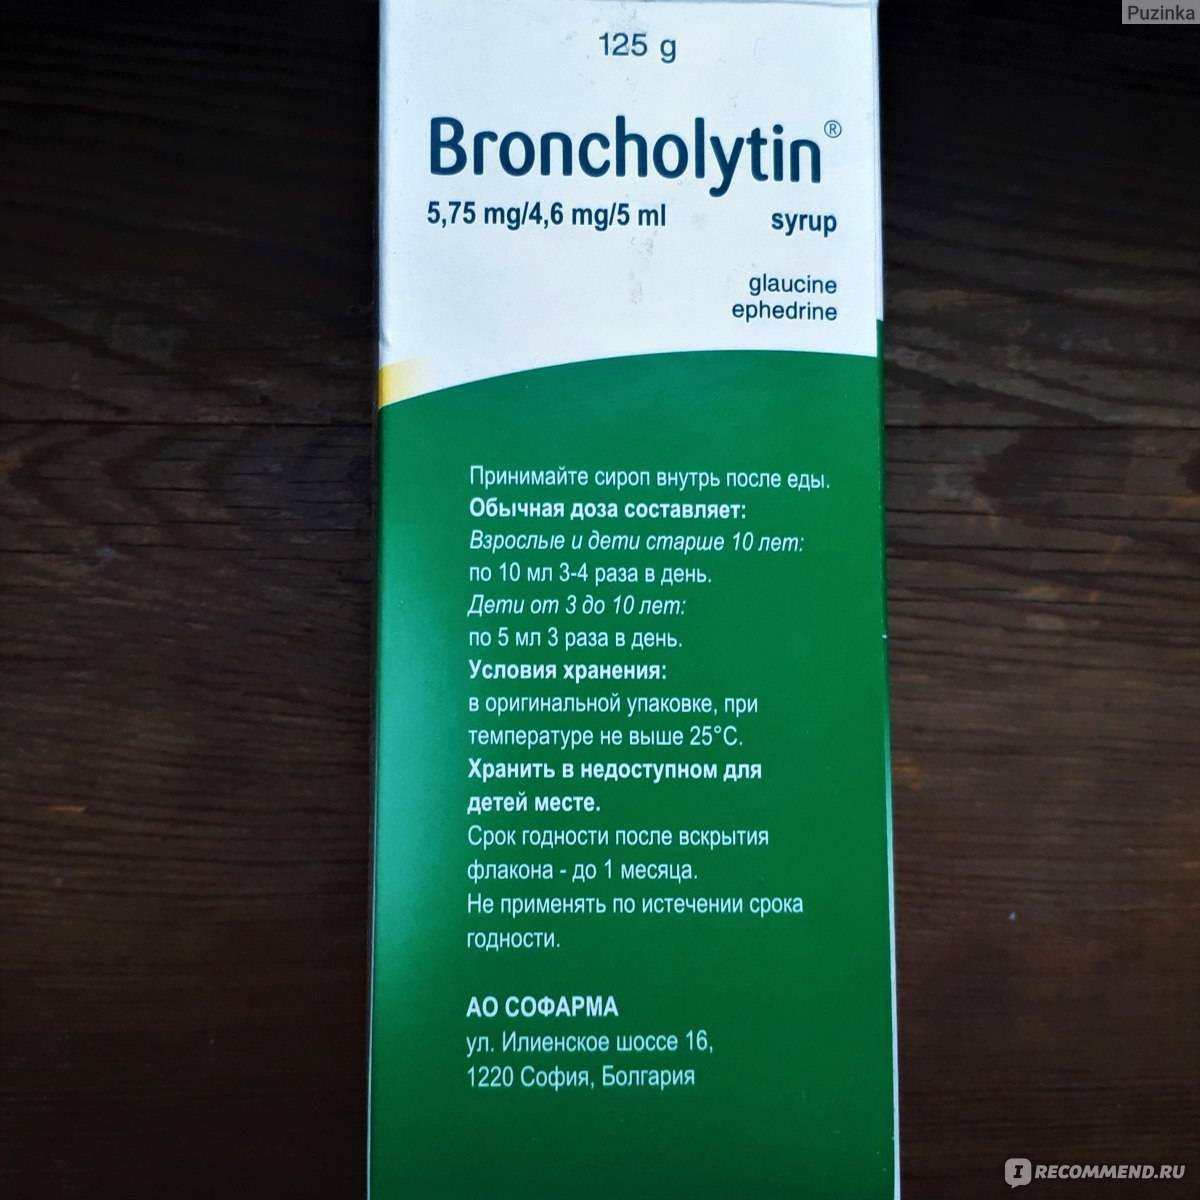 Бронхолитин сироп (125 г) инструкция, способ применения и дозы. cough suppressants and mucolytics действующее вещество. срок годности, аналоги, побочные эффекты - ua/10064/01/01